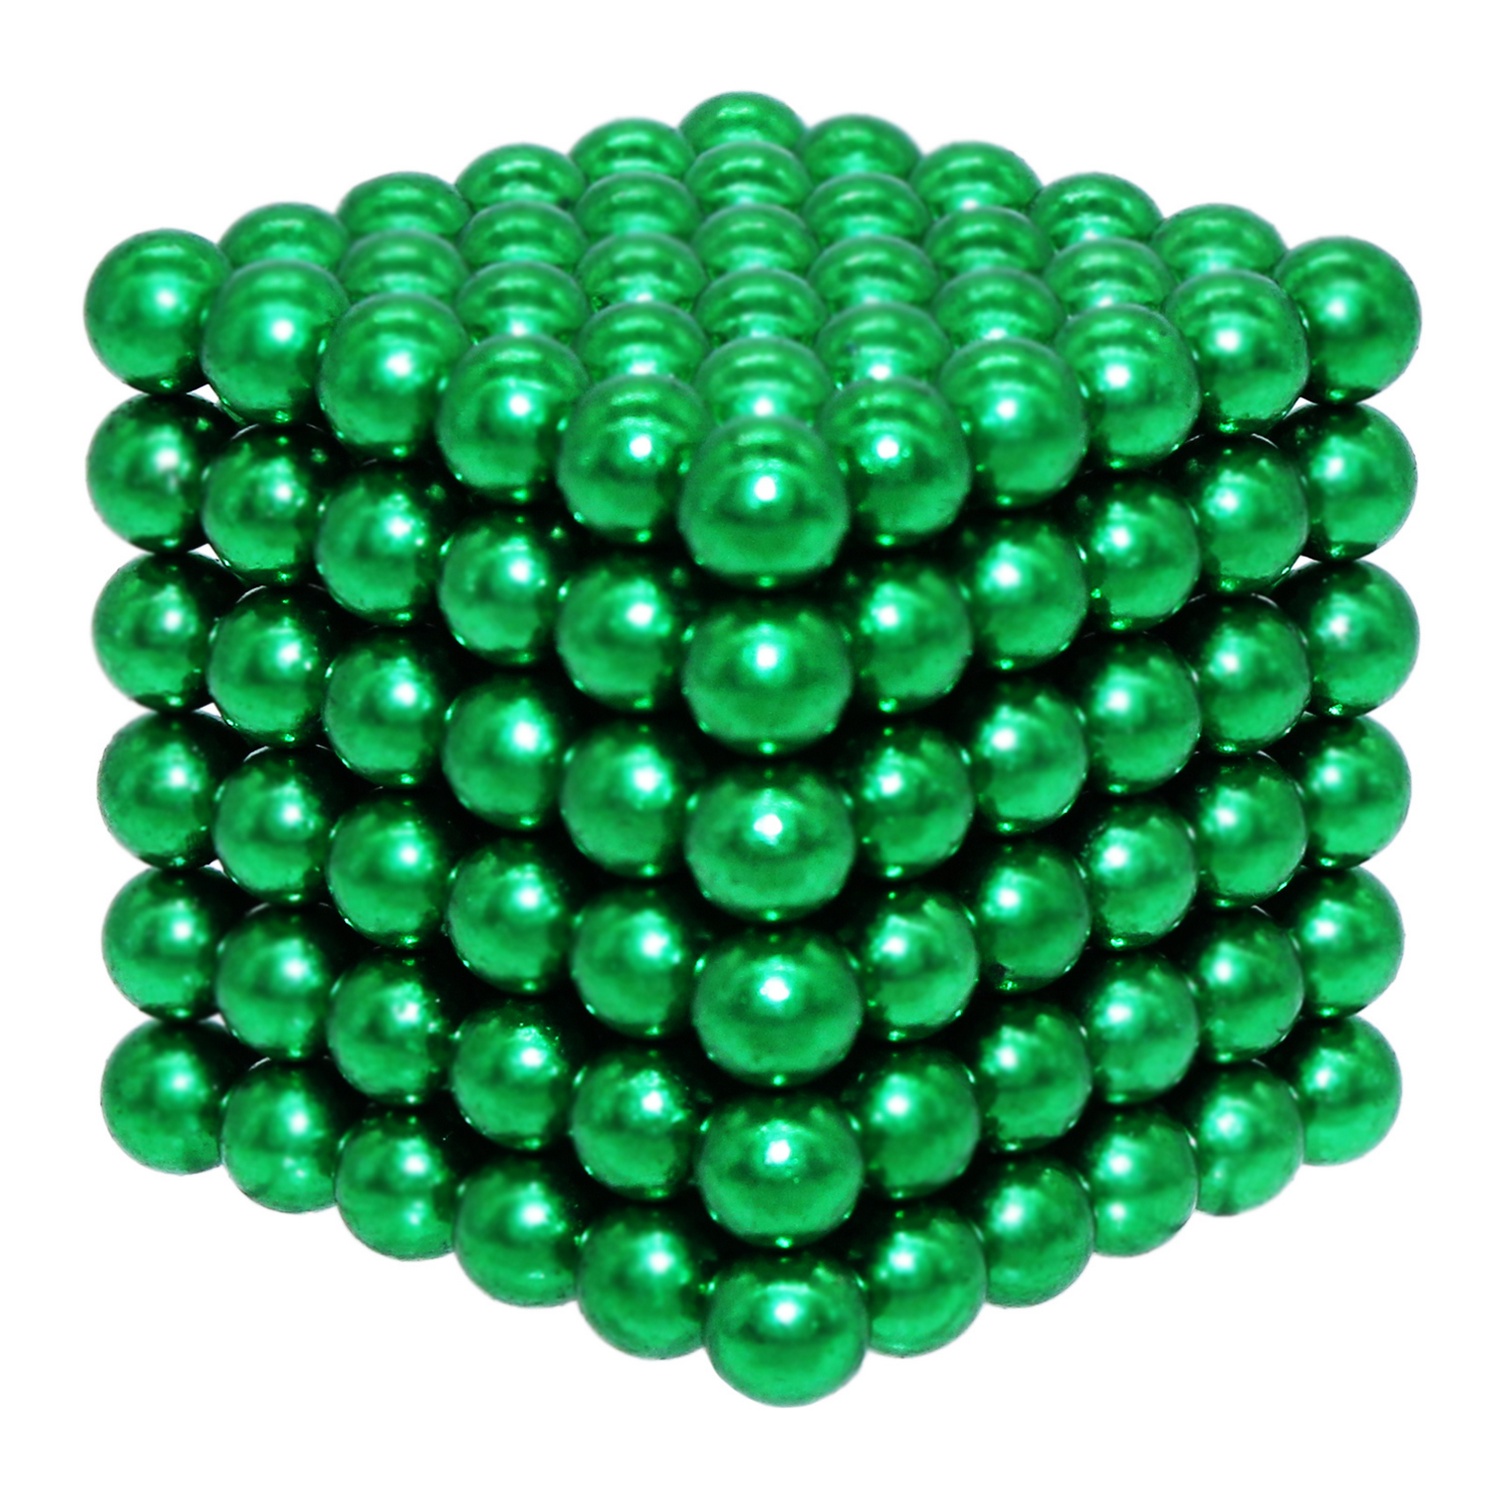 Головоломка магнитная Magnetic Cube зеленый неокуб 216 элементов - фото 6